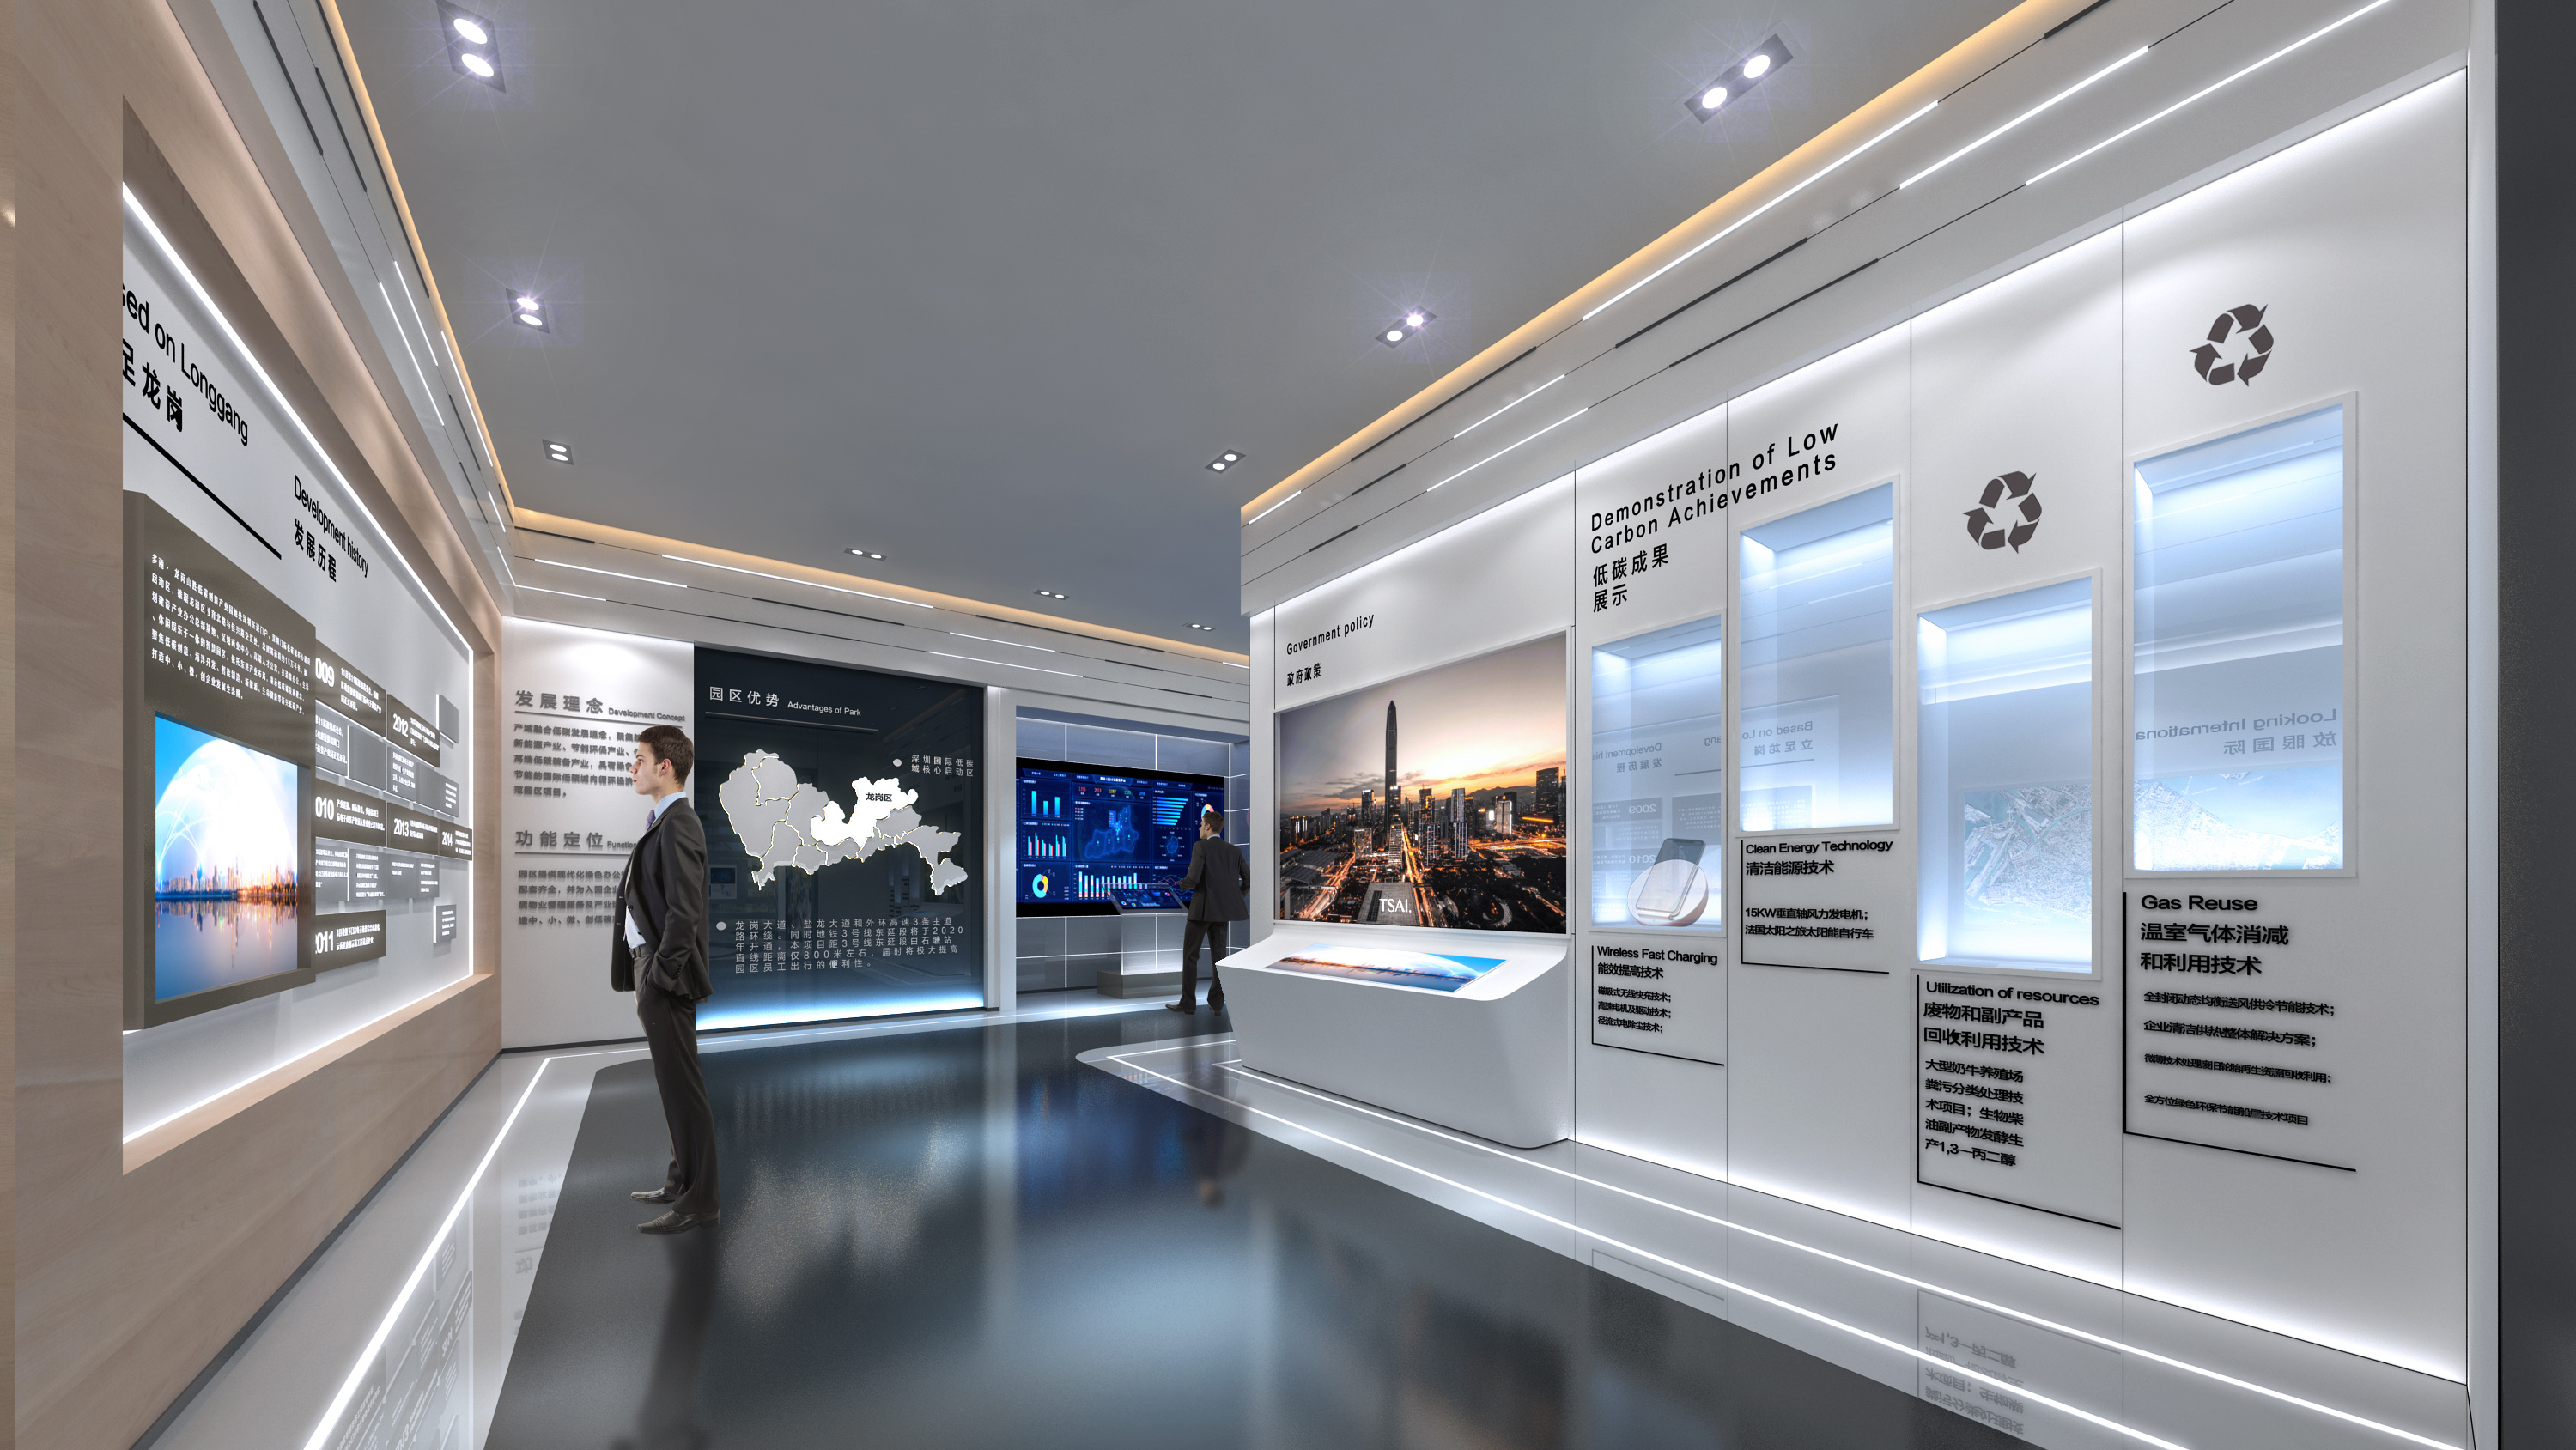 图片展示一位男士站在现代化展览厅内，环顾四周，展厅内有多个展示屏和信息板，设计简洁现代。